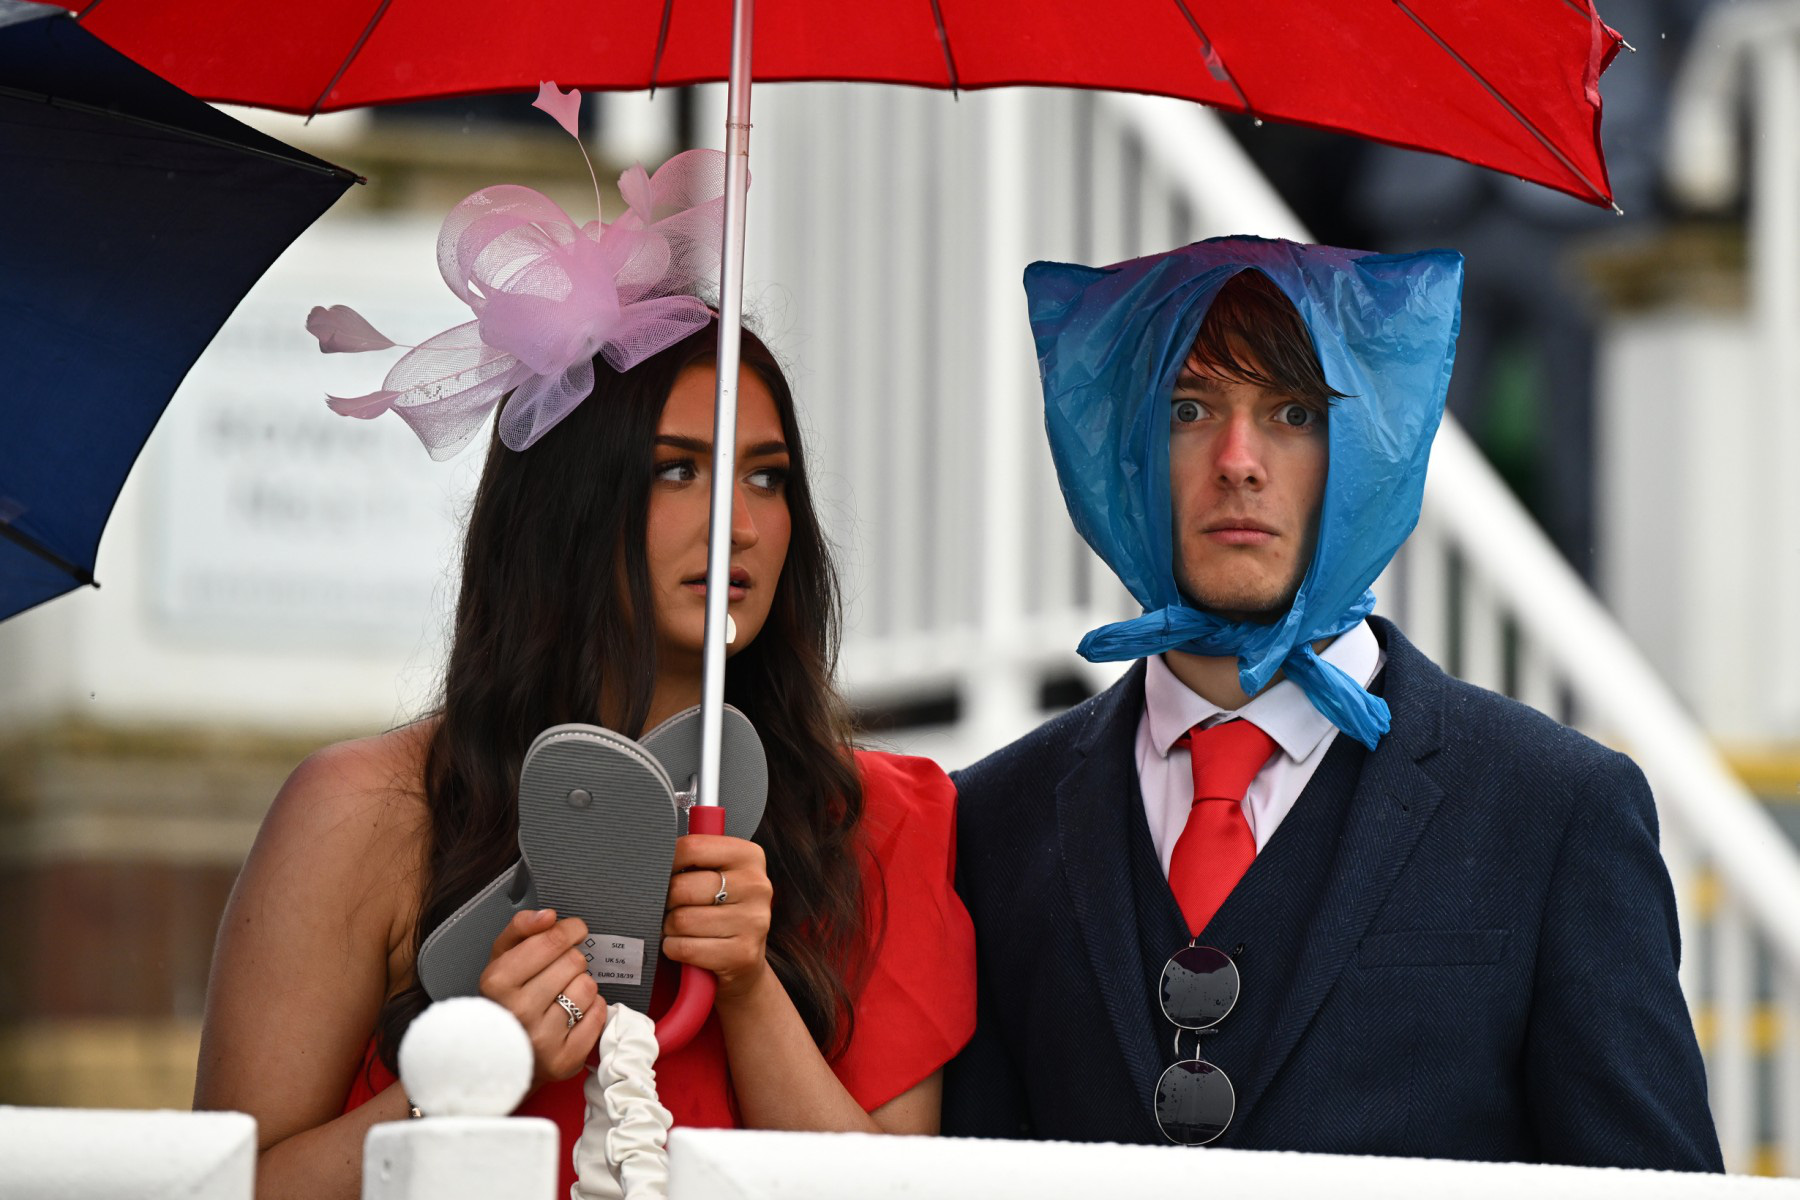 ผู้เข้าร่วมการแข่งขันม้าในเทศกาล Grand National Festival แสดงความคิดสร้างสรรค์ท่ามกลางสายฝนที่สนามแข่งม้า Aintree ในลิเวอร์พูล ทางตะวันตกเฉียงเหนือของอังกฤษ เมื่อวันที่ 14 เมษายน - รูปภาพ: AFP